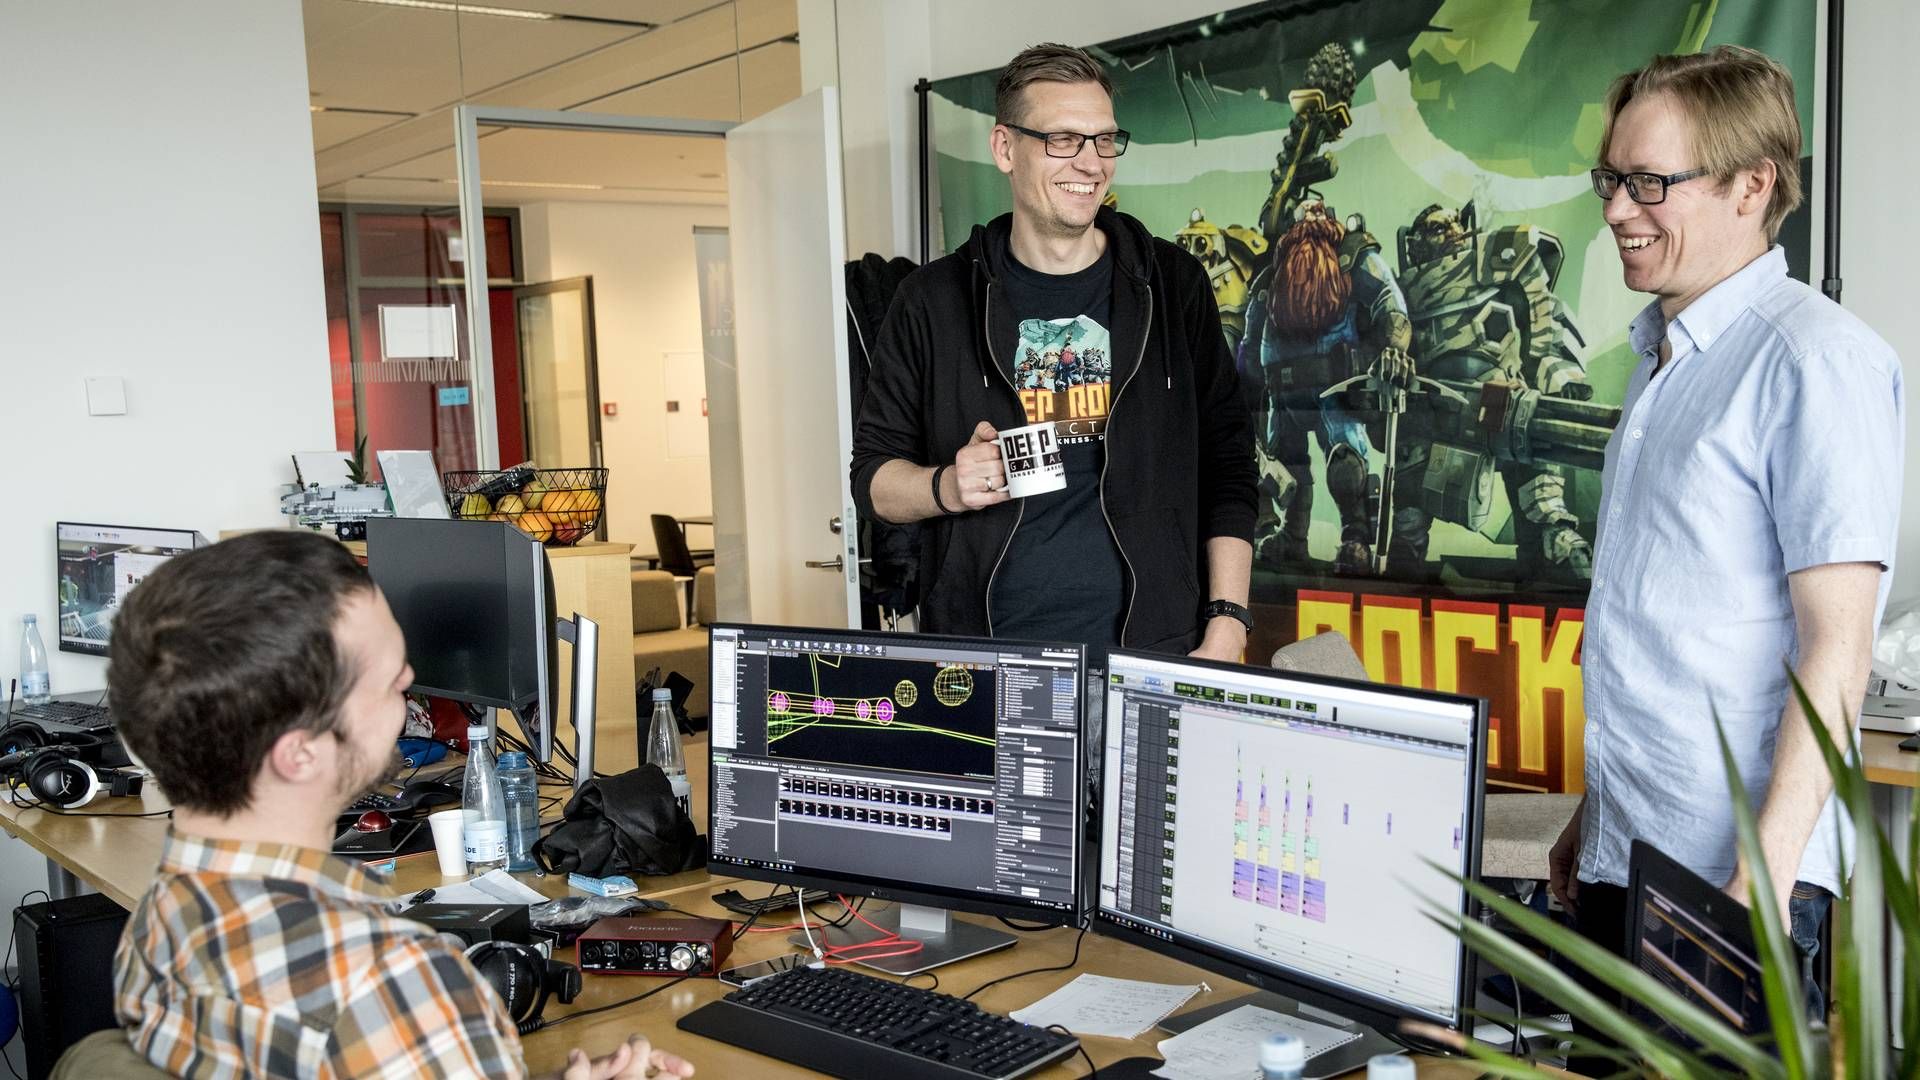 Ligesom mange andre danske spilfirmaer blev Ghost Ship Games født gennem en investering fra det nu lukkede Capnova. Der er stadig ikke kommet et godt alternativ, tre år efter lukningen, lyder vurderingen fra direktør Søren Lundgaard (th.). | Foto: Stine Bidstrup / Ritzau Scanpix